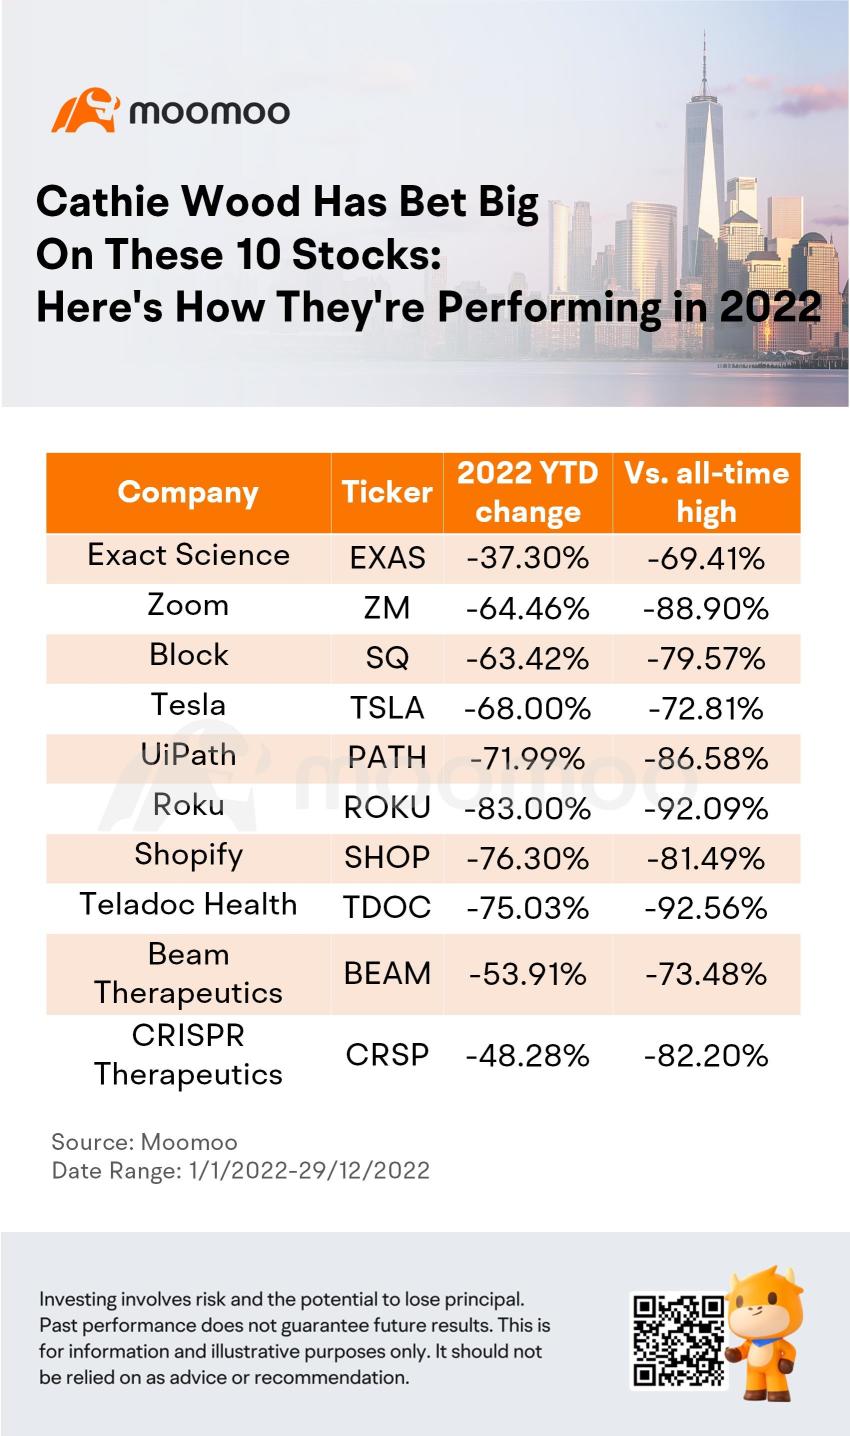 凱西·伍德投注了這 10 股票：以下是它們在 2022 年的表現